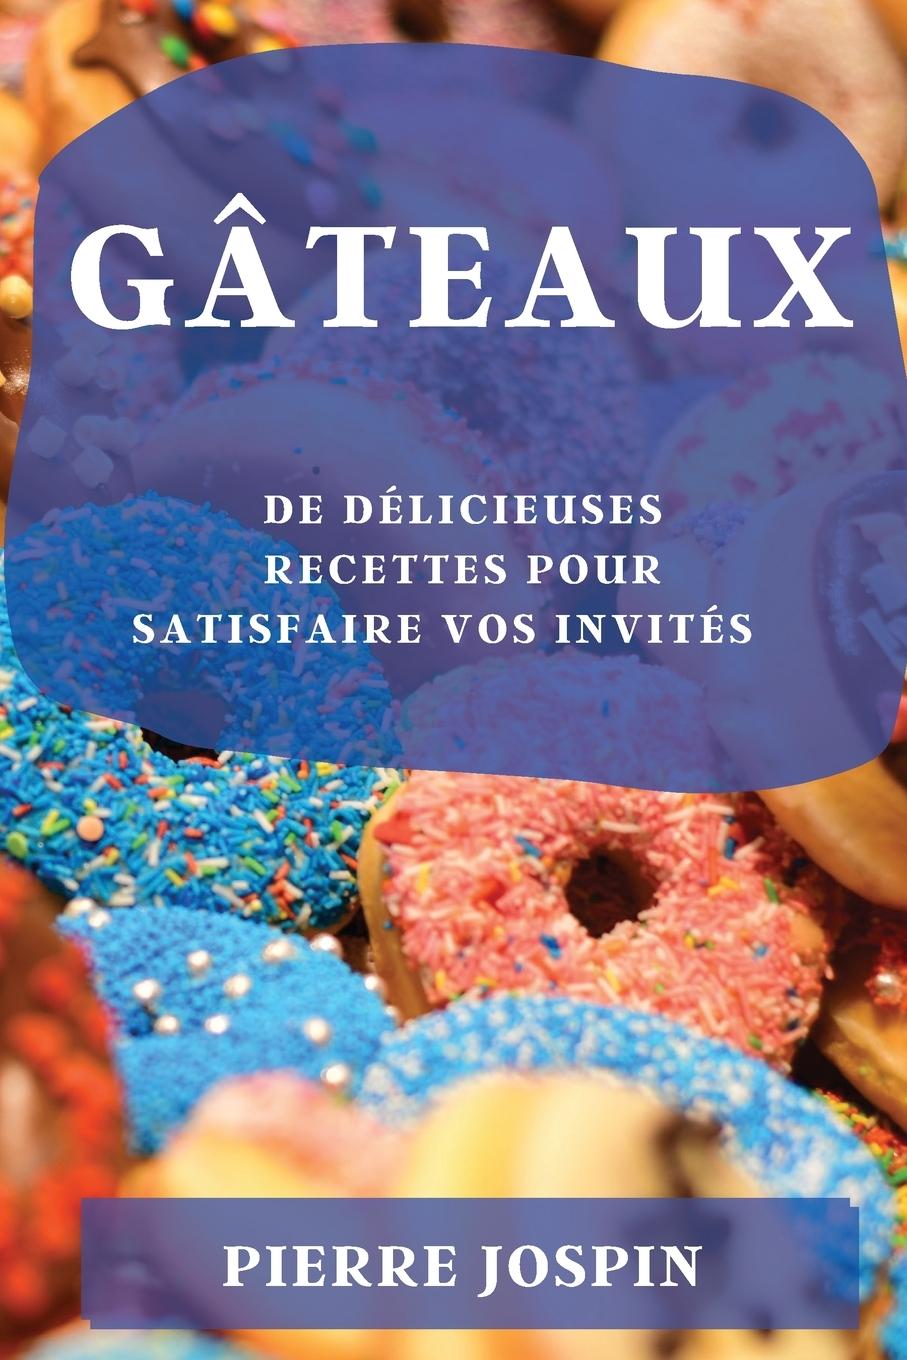 Kniha Gateaux 